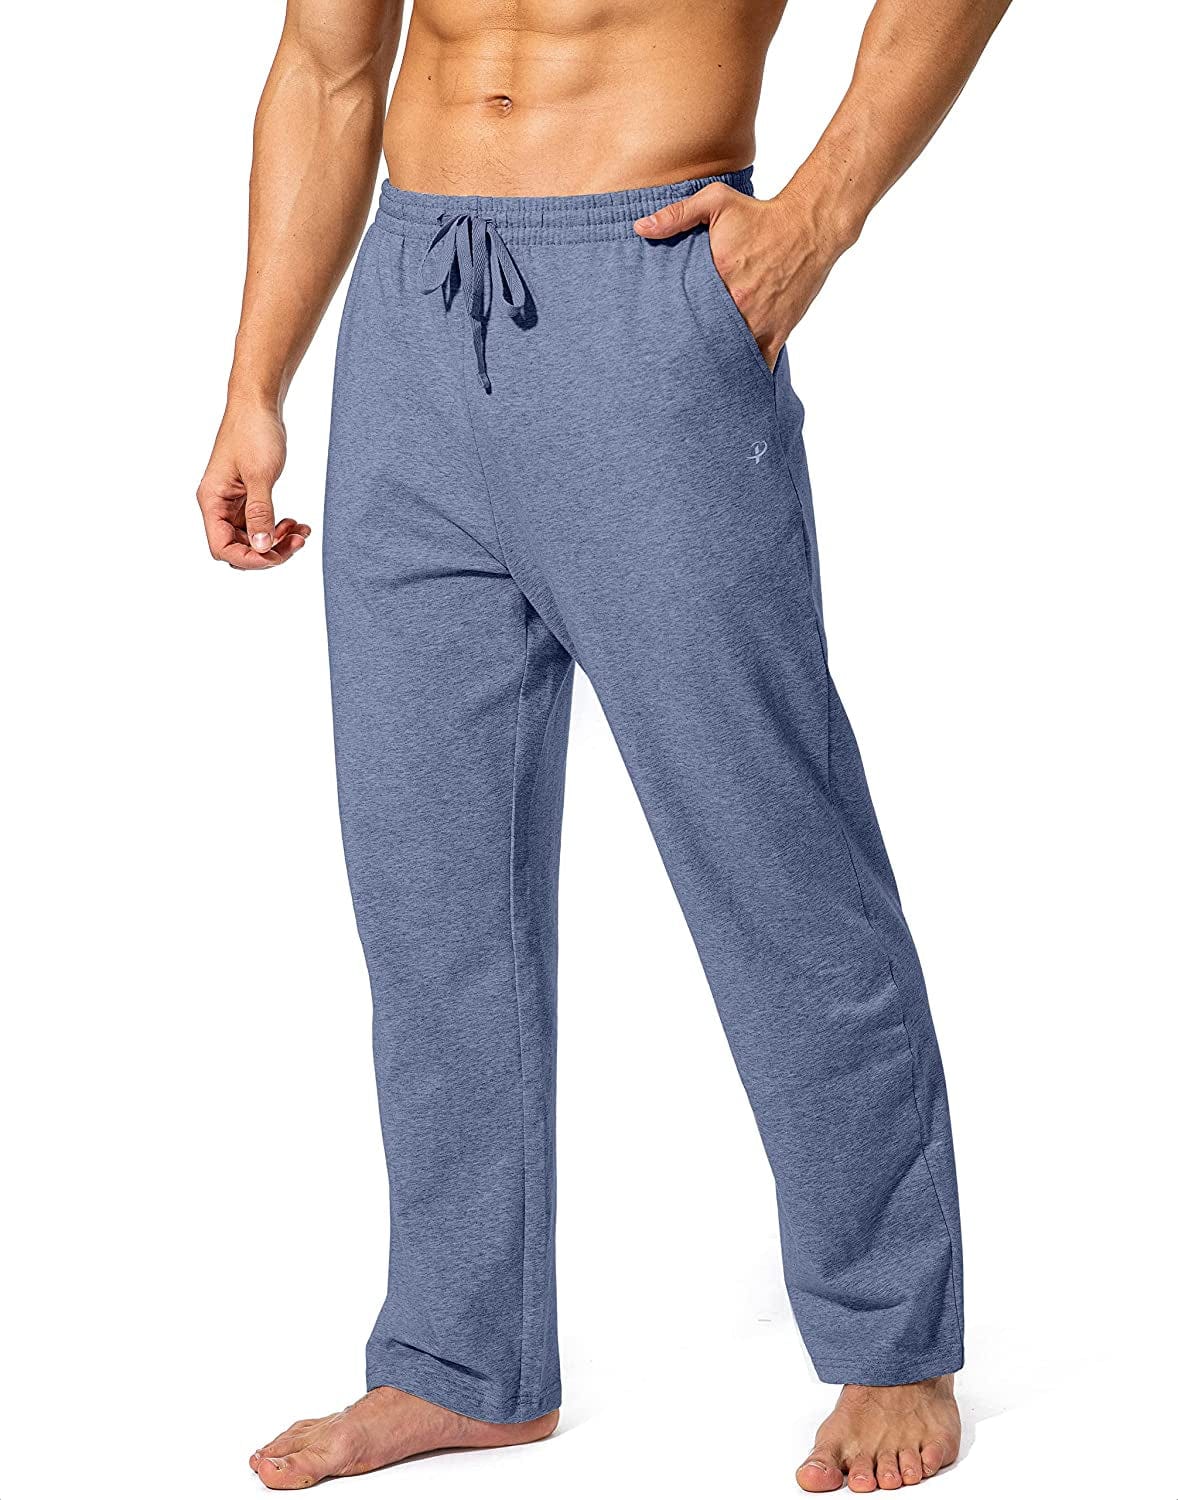 Pudolla Men'S Cotton Yoga Sweatpants Athletic Lounge Pants Open